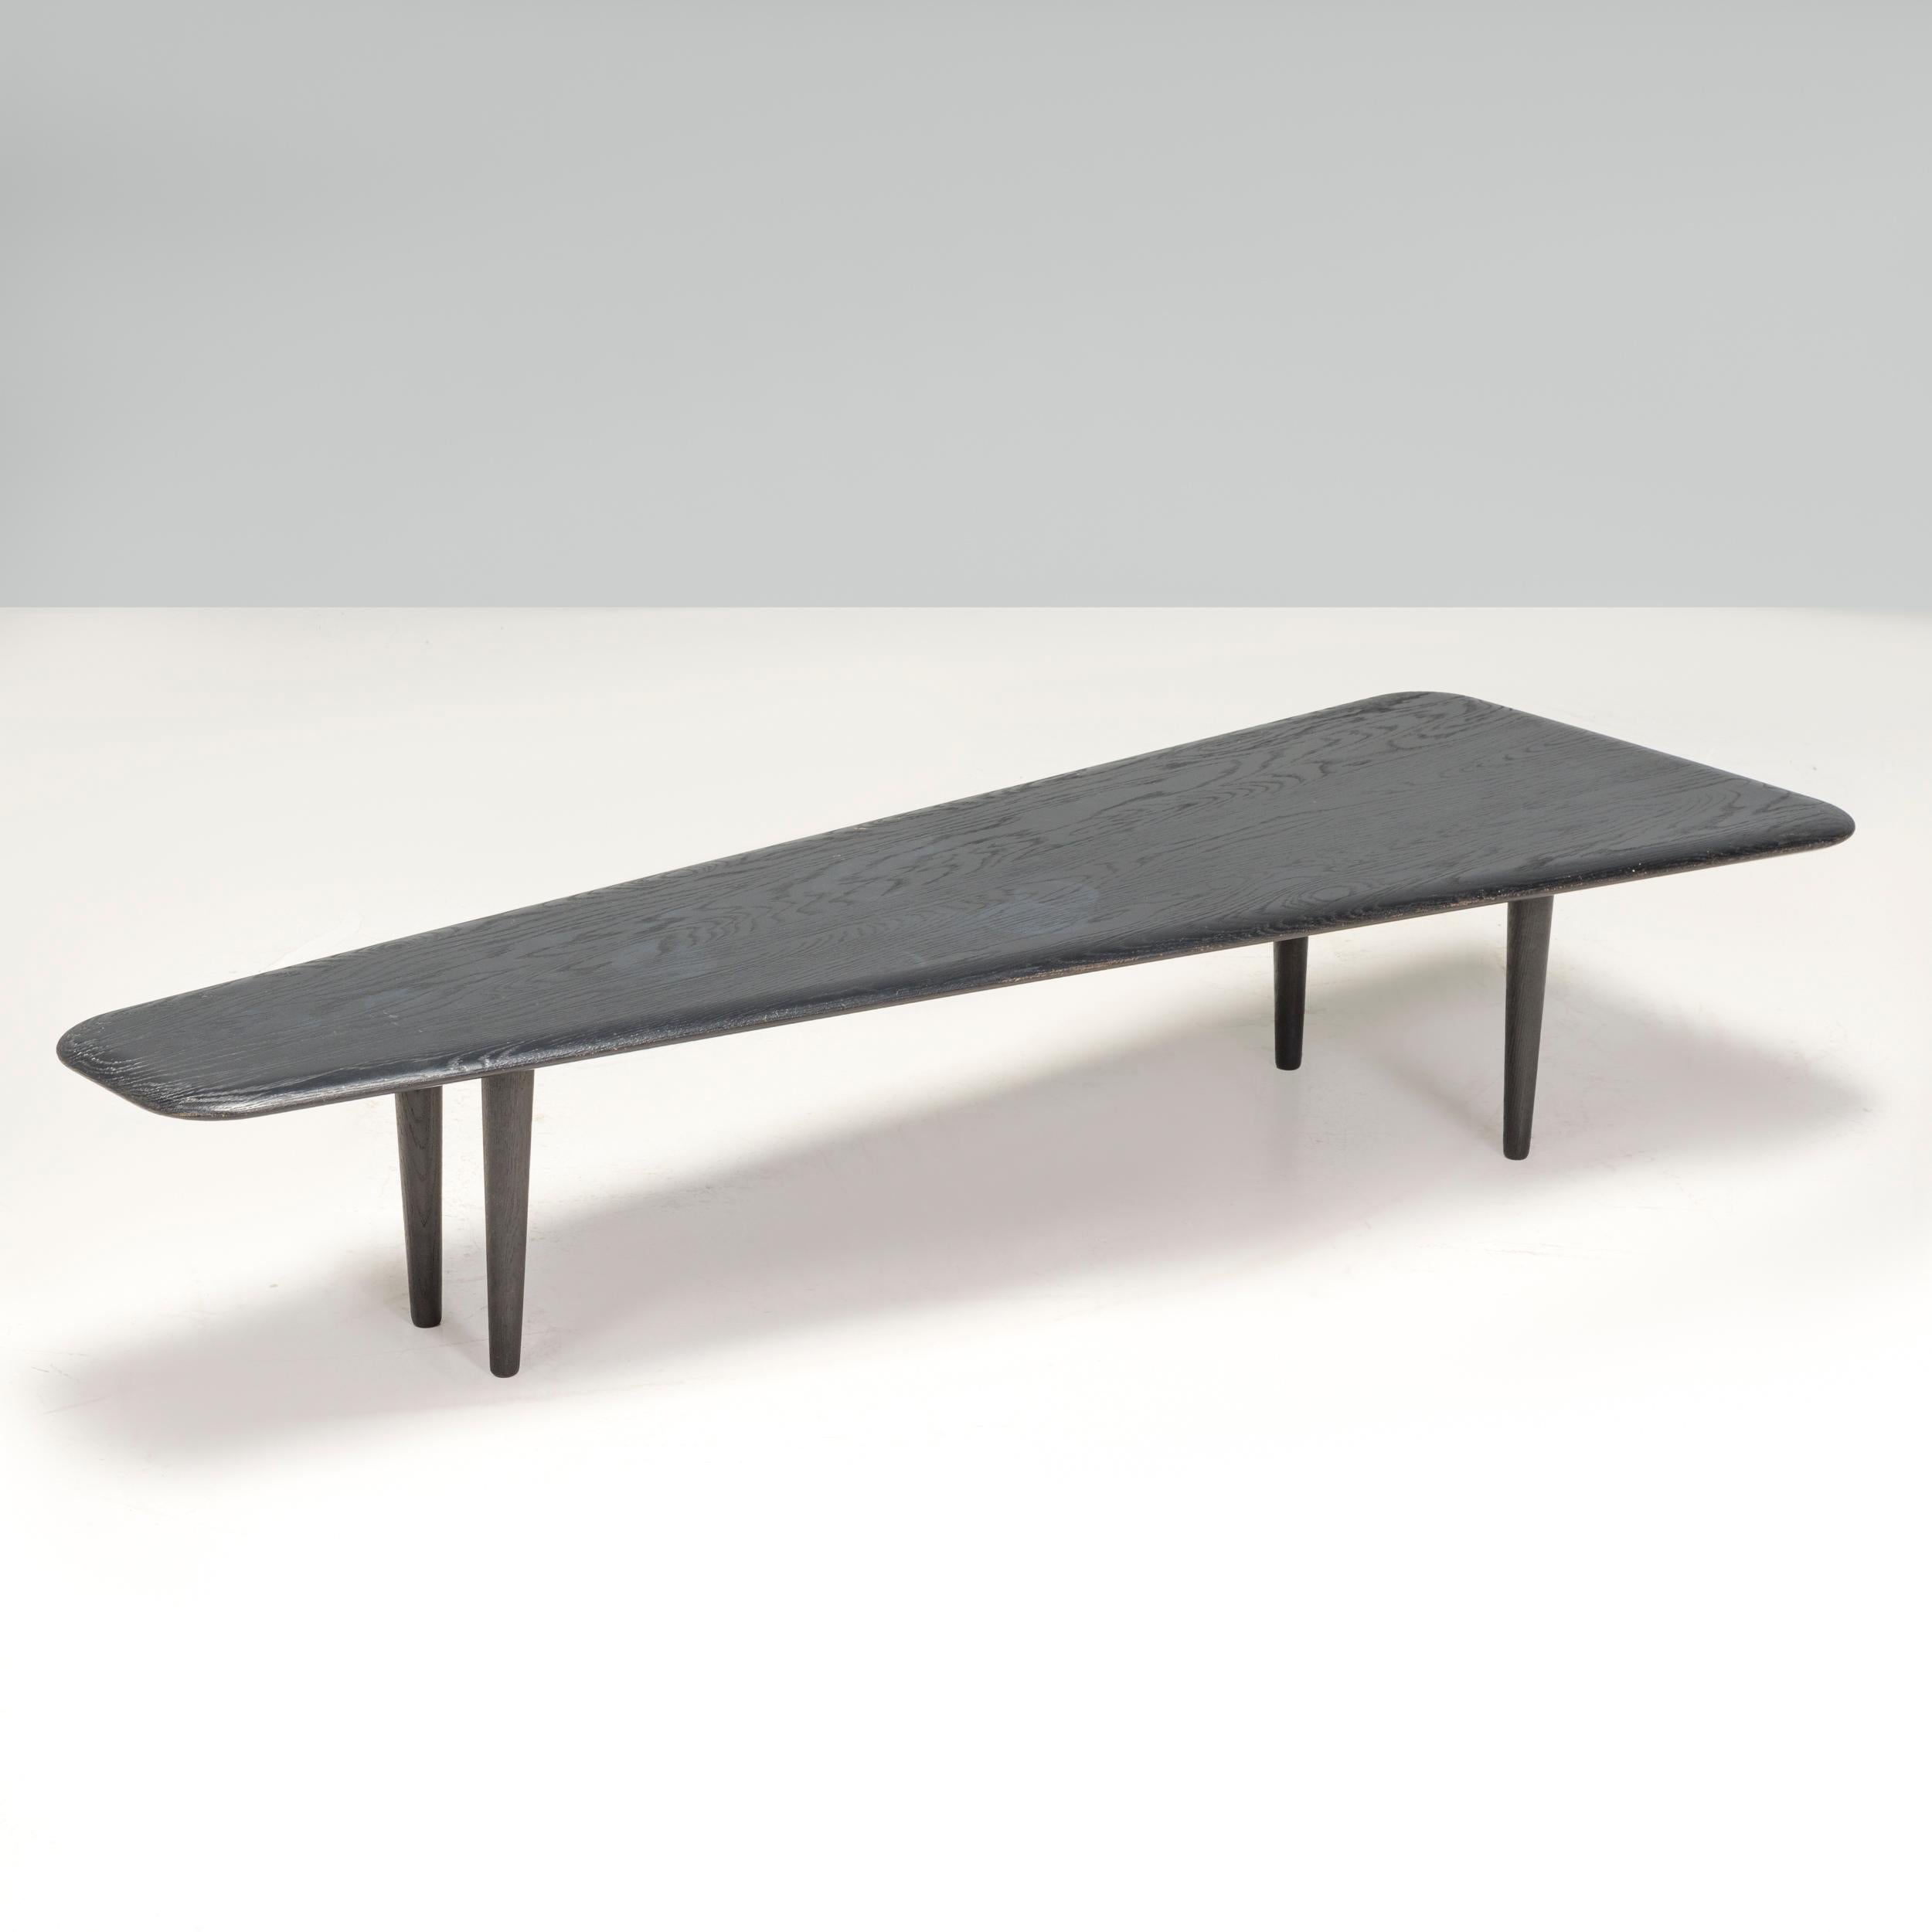 Conçue par Tom Dixon, l'un des designers britanniques les plus connus du XXIe siècle, cette table basse en dalle de chêne foncé associe des matériaux de qualité à une esthétique épurée.

 Construit en chêne massif couronné, le bois a été